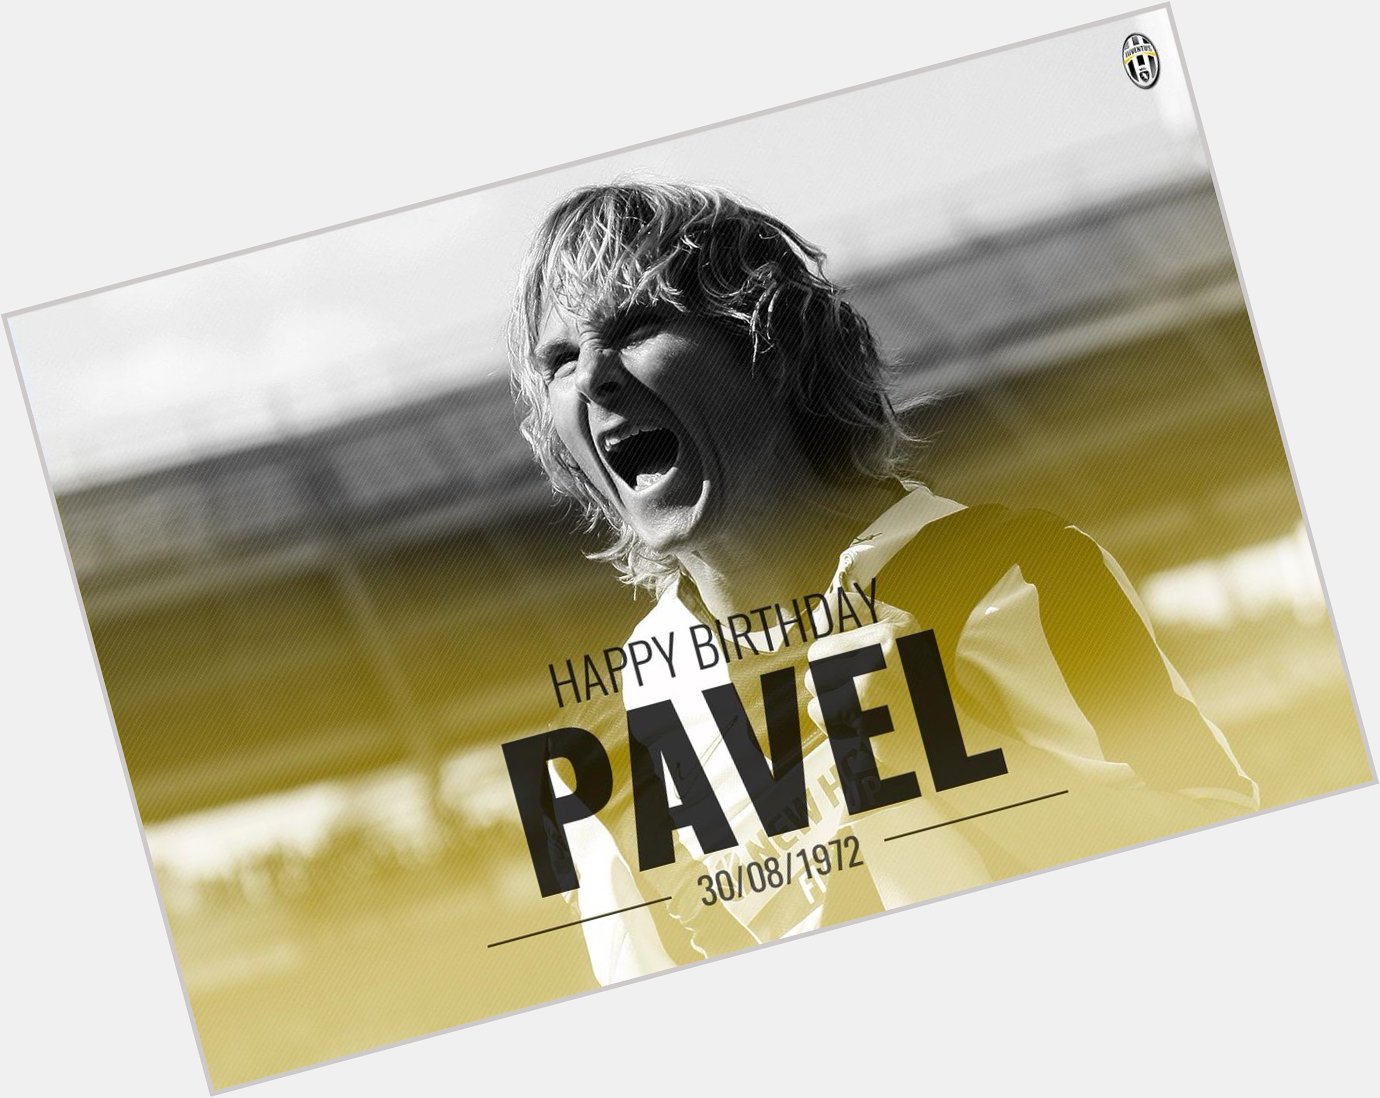 Legend. Happy birthday, Pavel Nedved. 